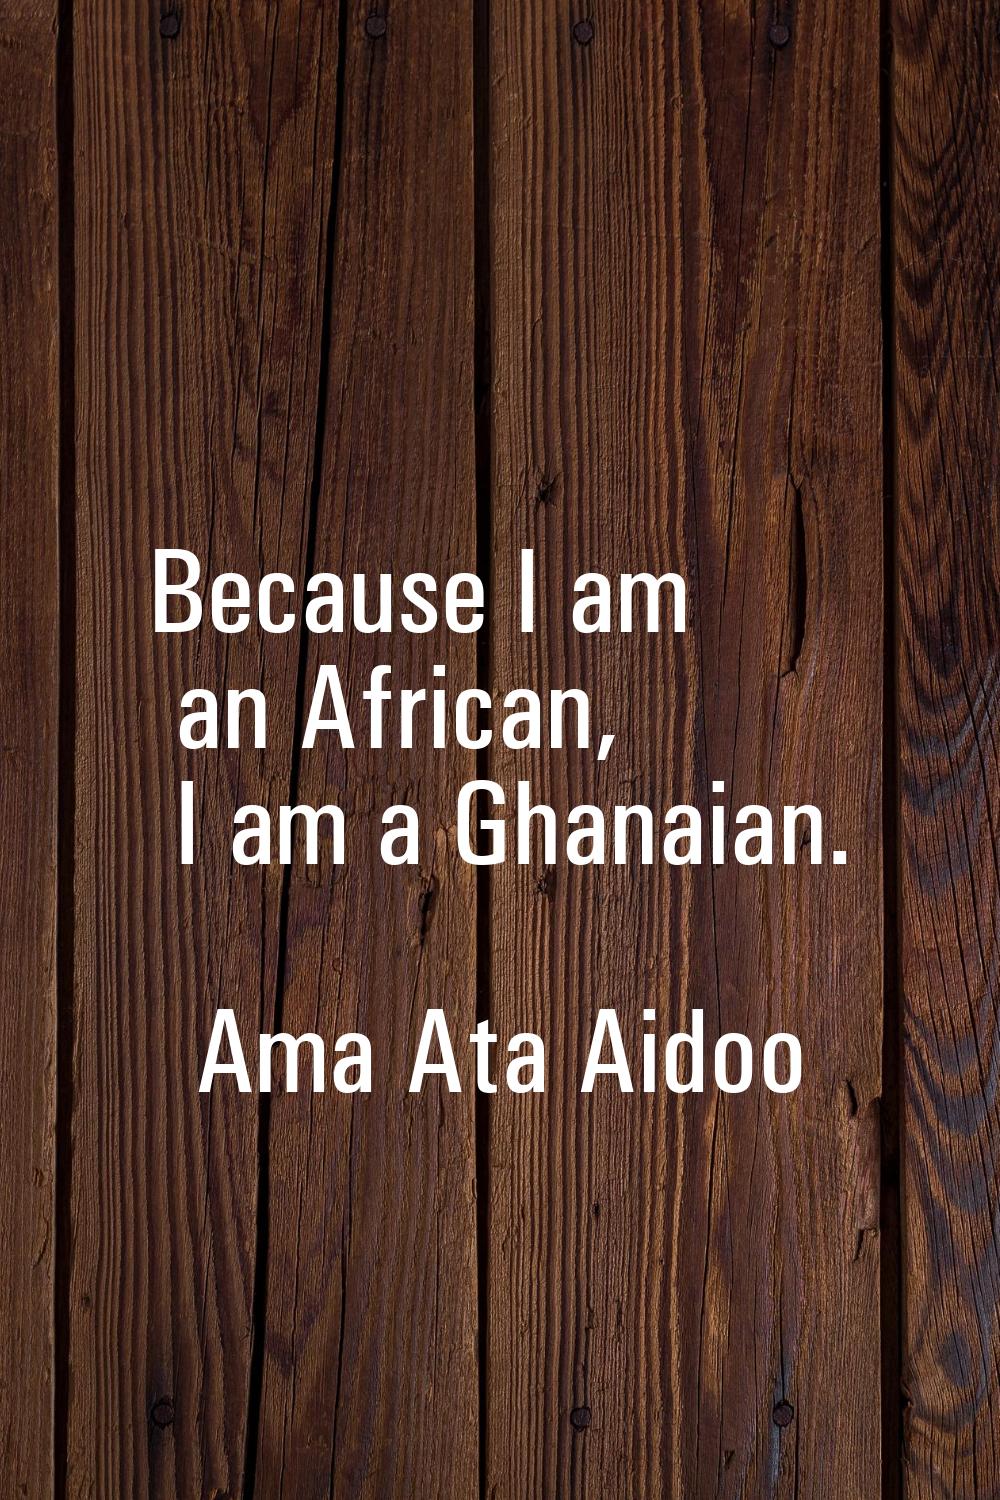 Because I am an African, I am a Ghanaian.